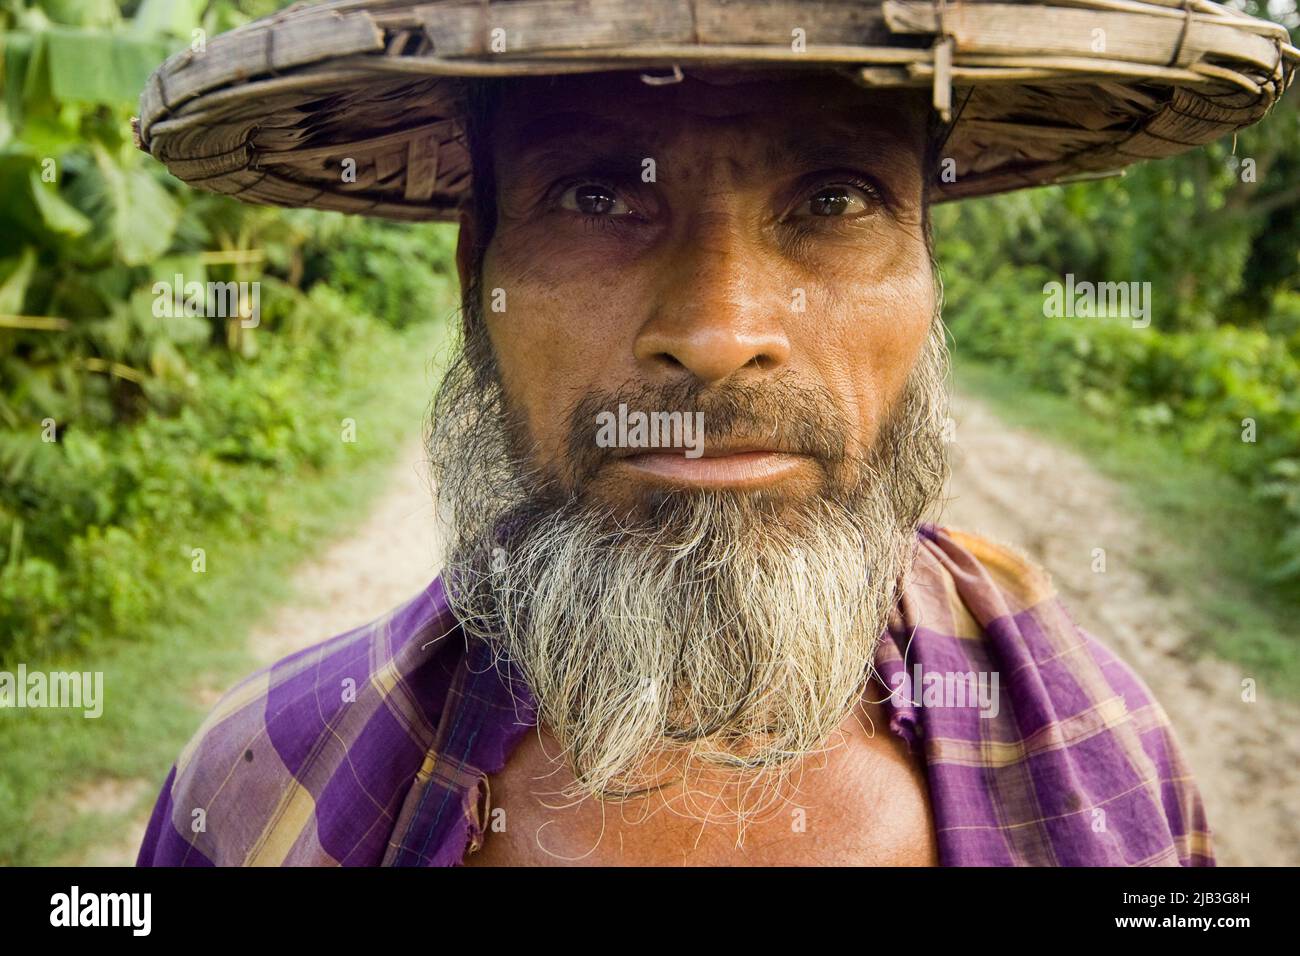 Portrait d'un agriculteur. Meherpur, Bangladesh. 26 juin 2007. Banque D'Images